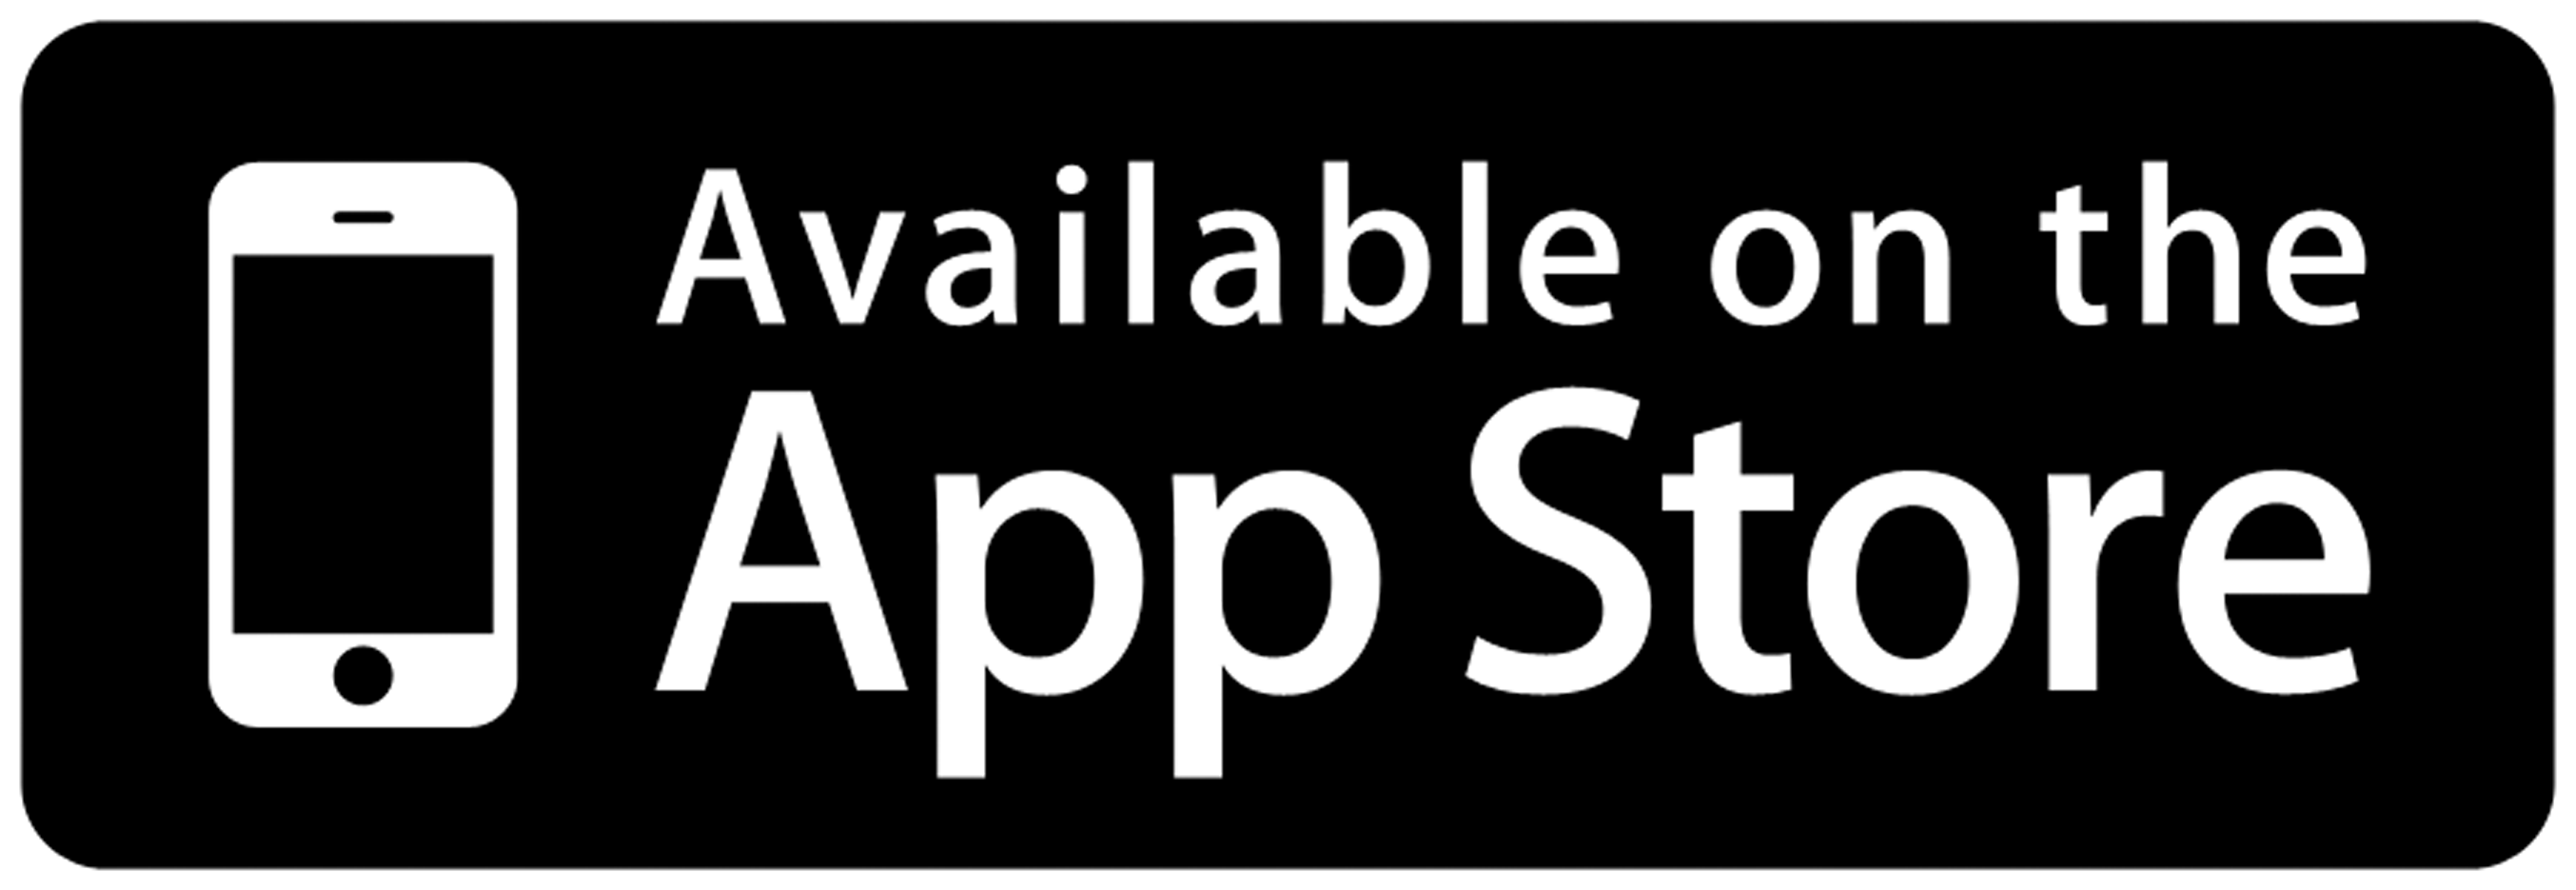 APPSTORE иконка. Apple Store значок. App Store приложения. Доступно в app Store. Покупки ап стор